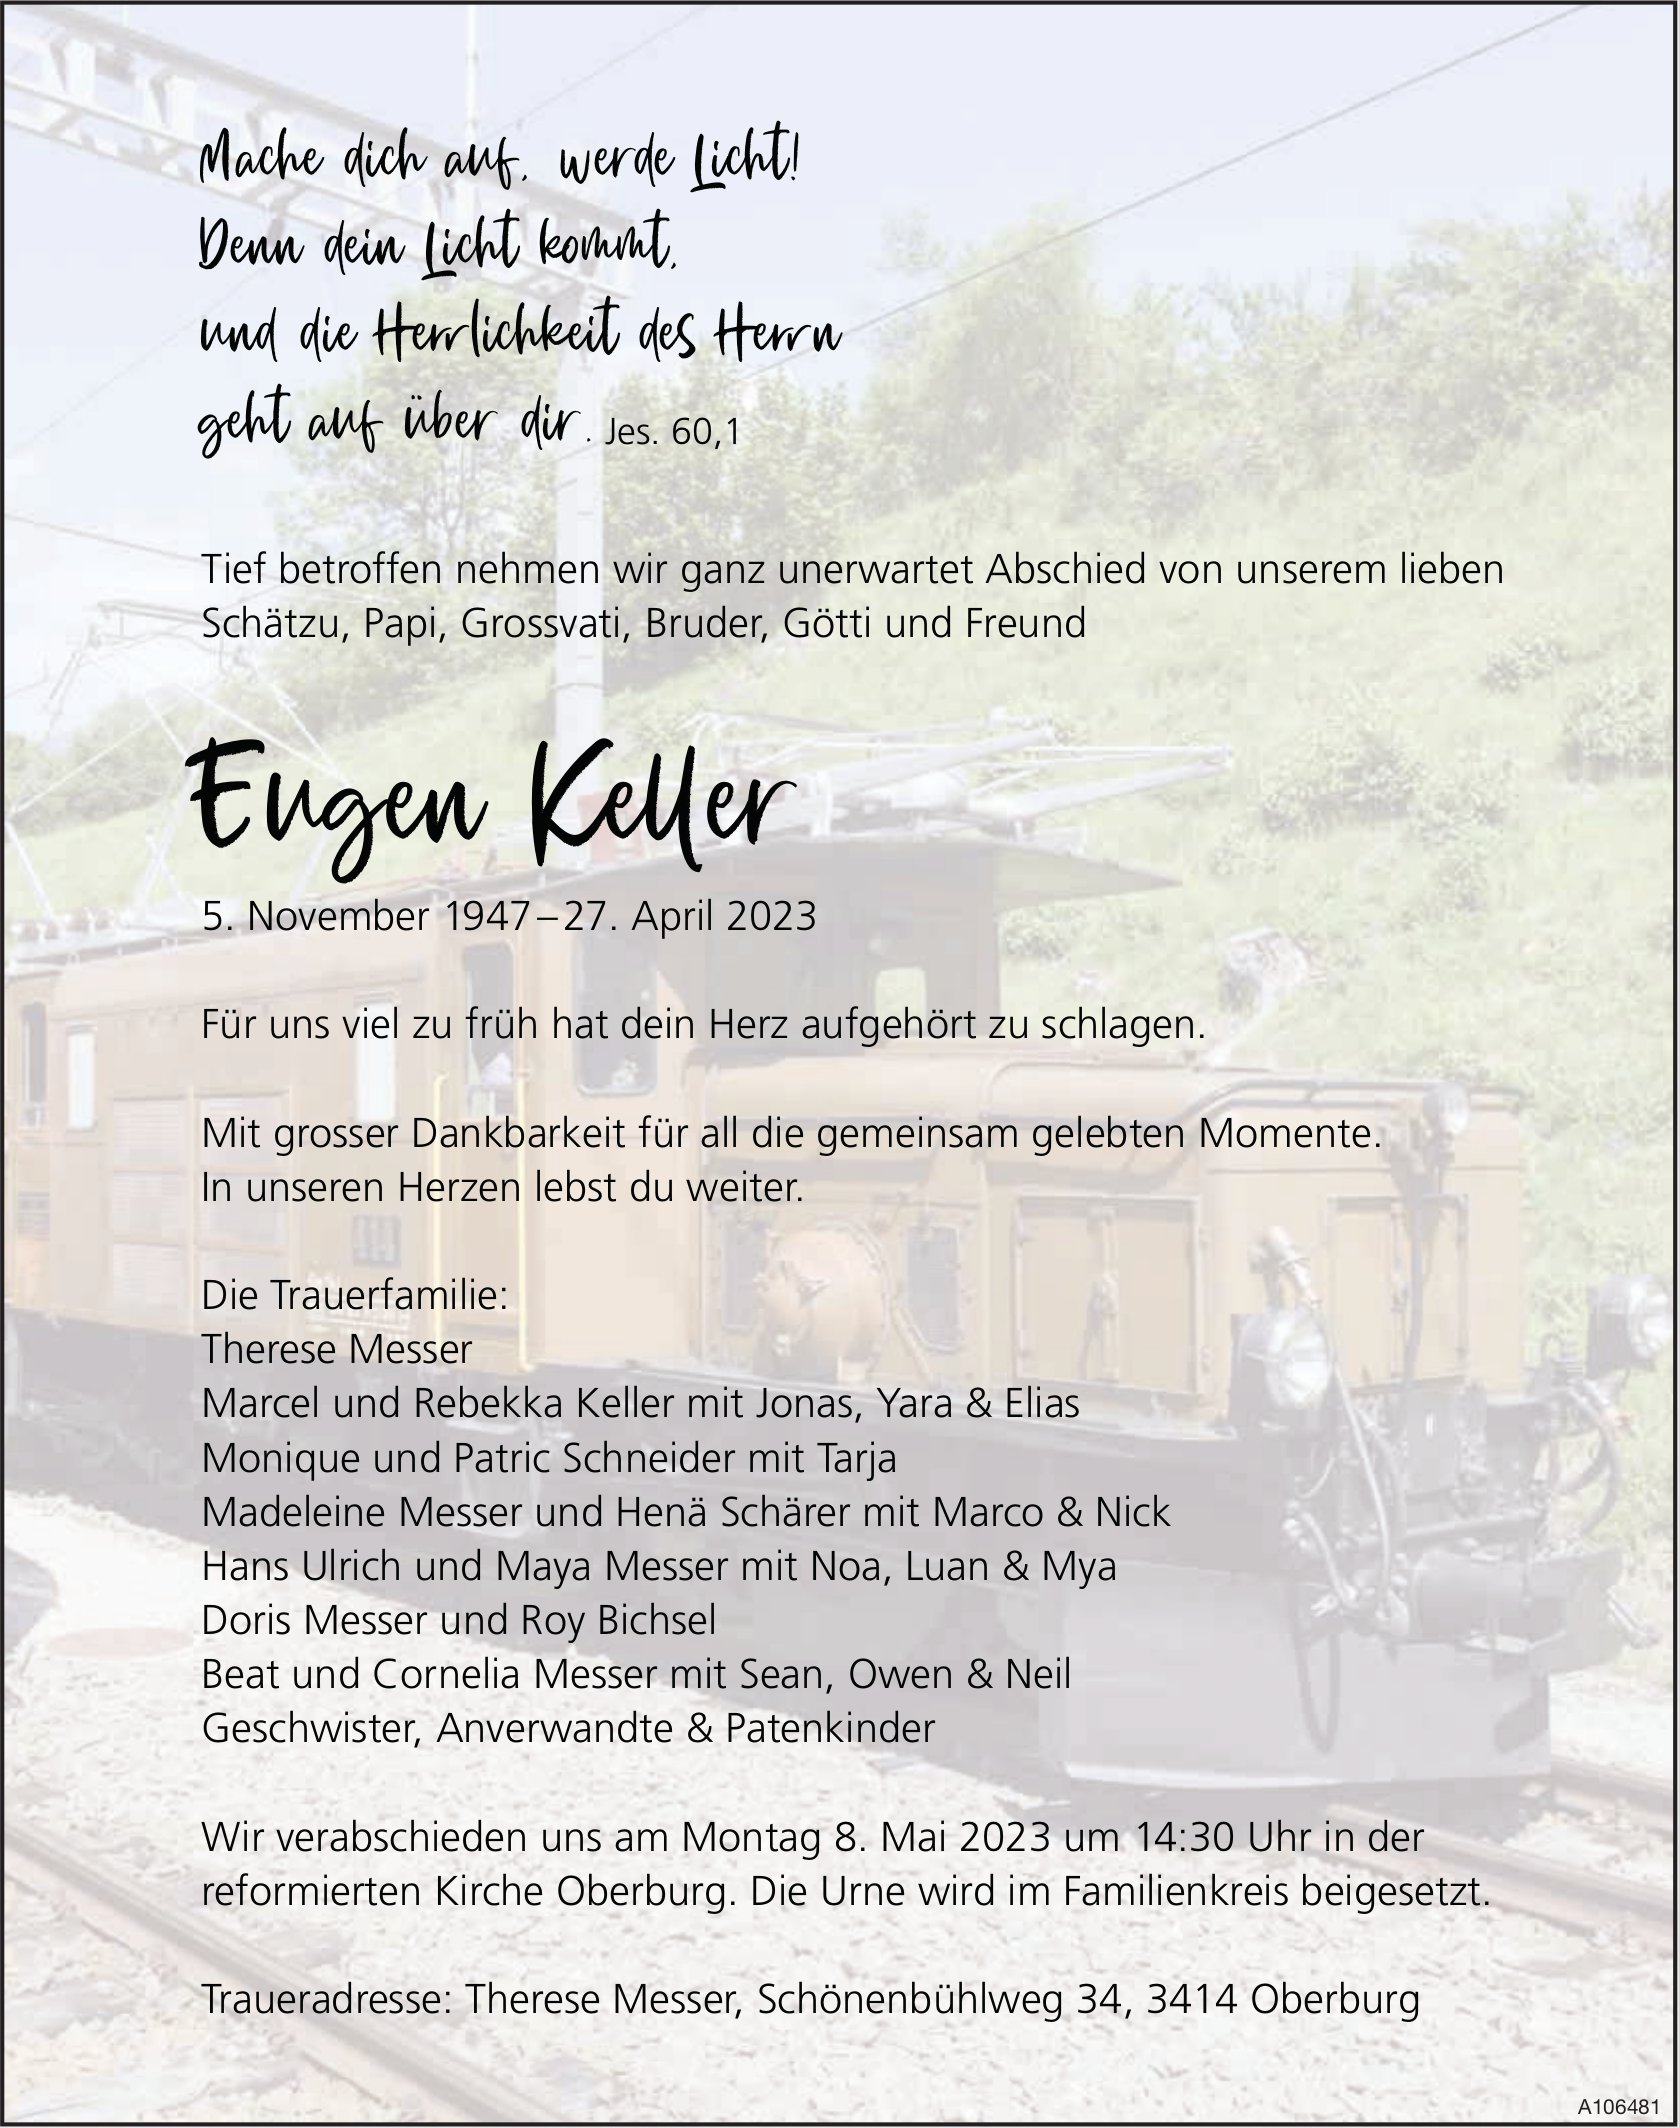 Eugen Keller, April 2023 / TA